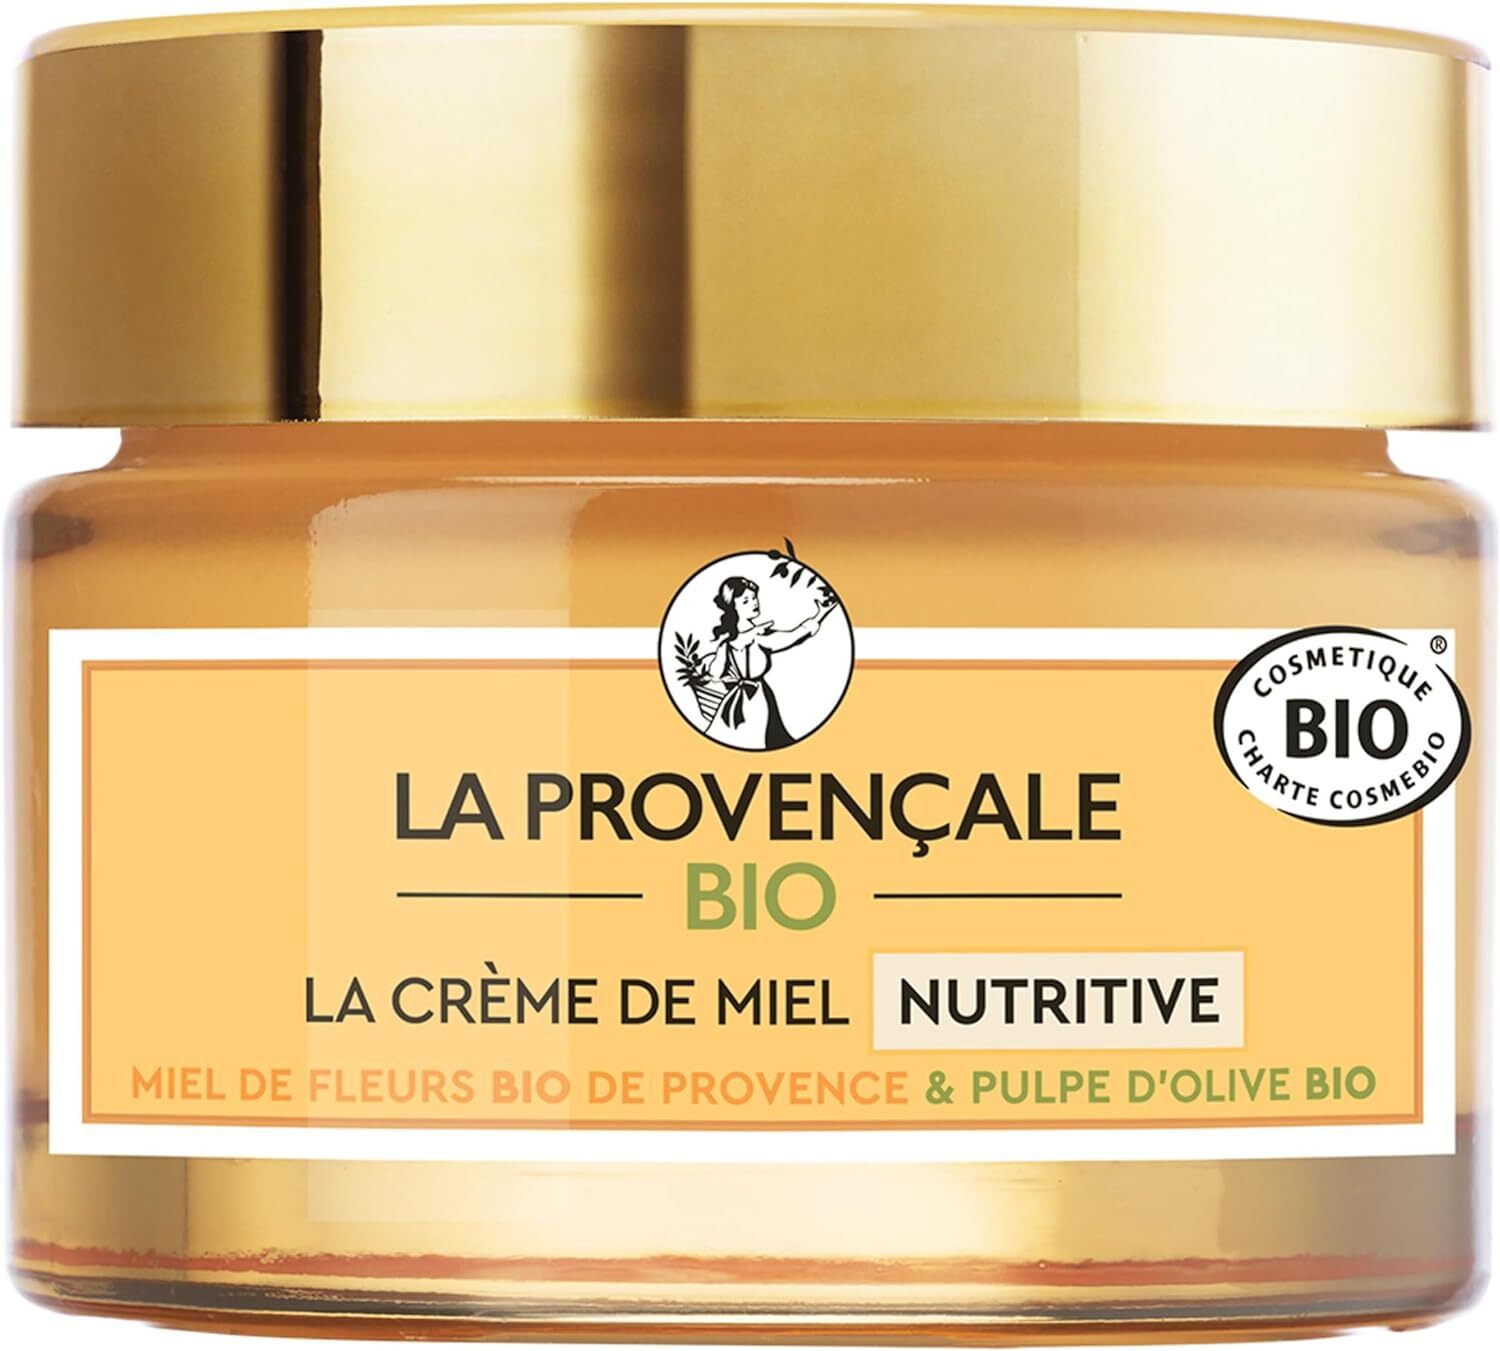 La crème hydratante La Provençale